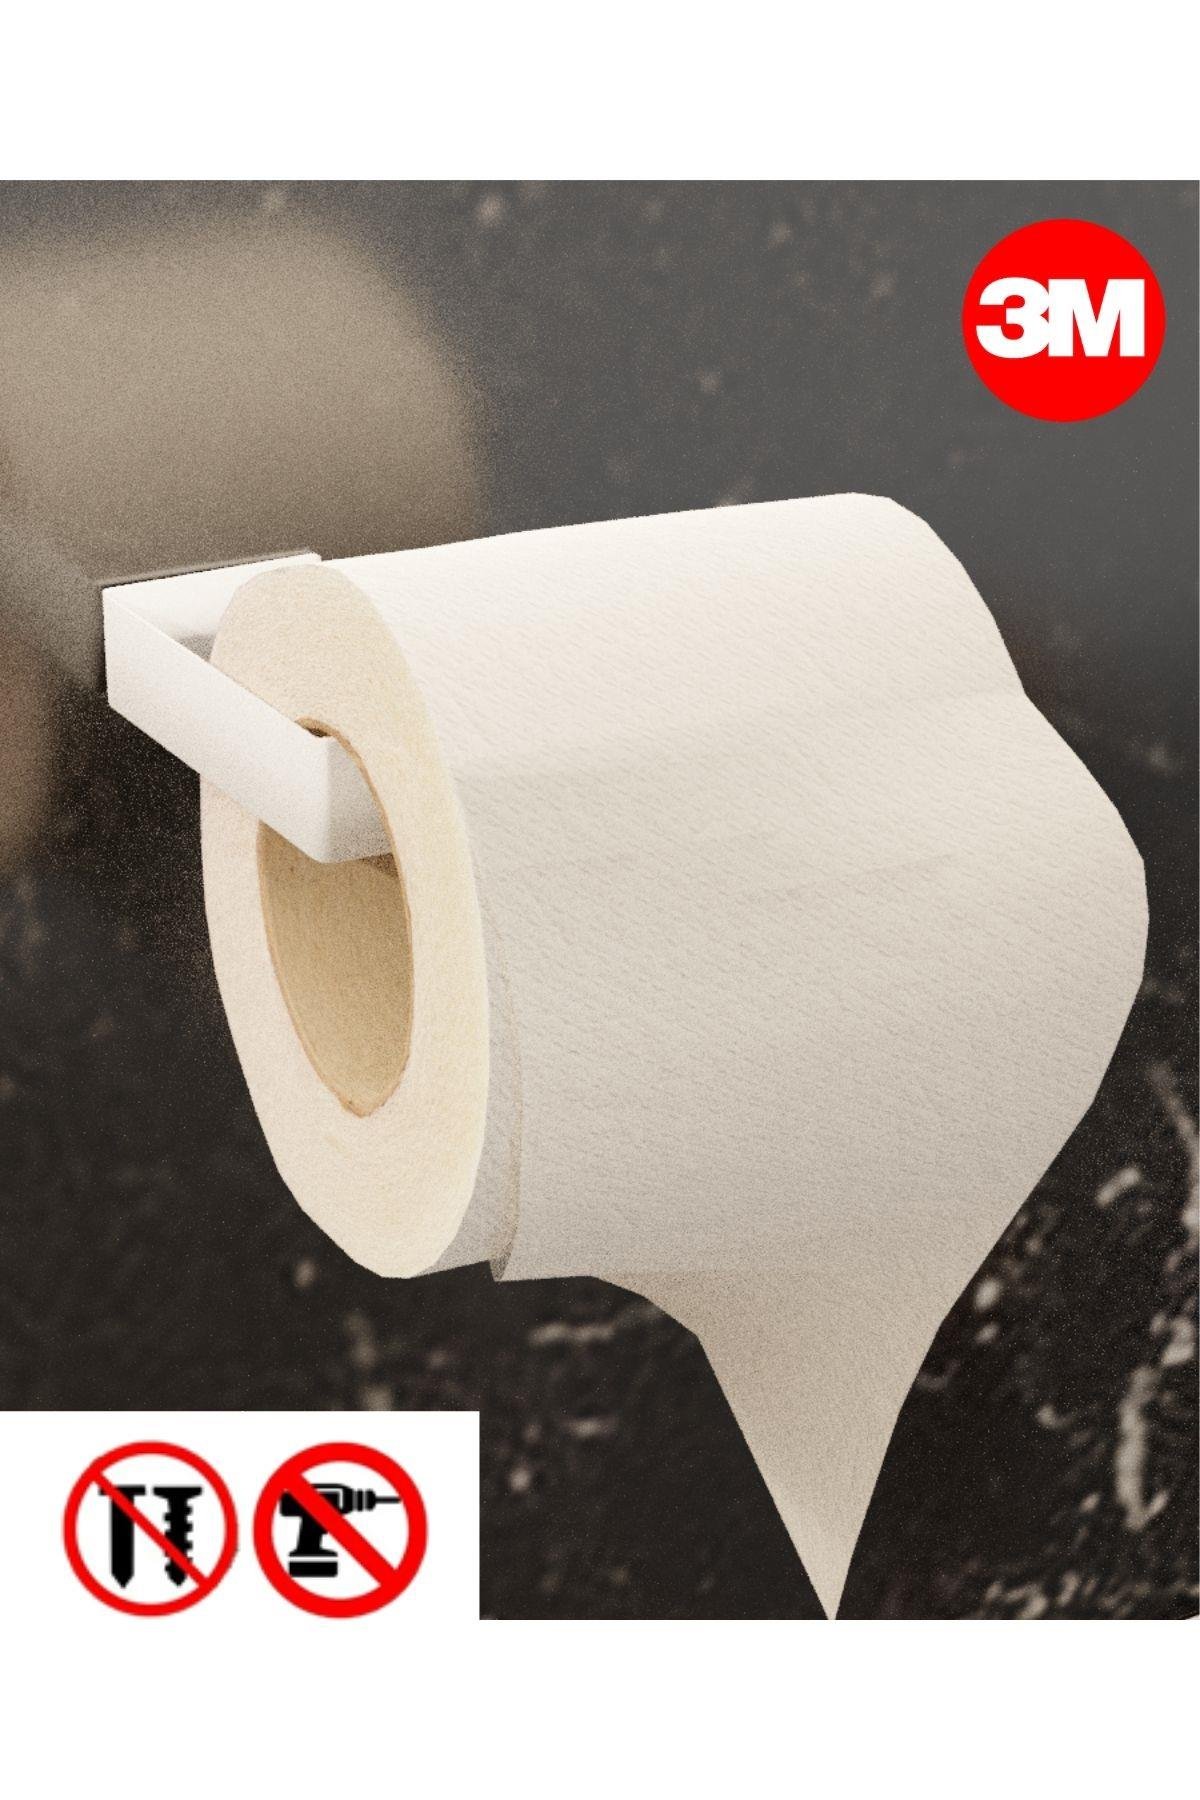 Risingmaber Metal Beyaz Yapışkanlı Tuvalet Kağıtlık, Yapışkanlı Wc  Kağıtlık, Tuvalet Kağıdı Askısı 3M Yapışkanlı Tasarım